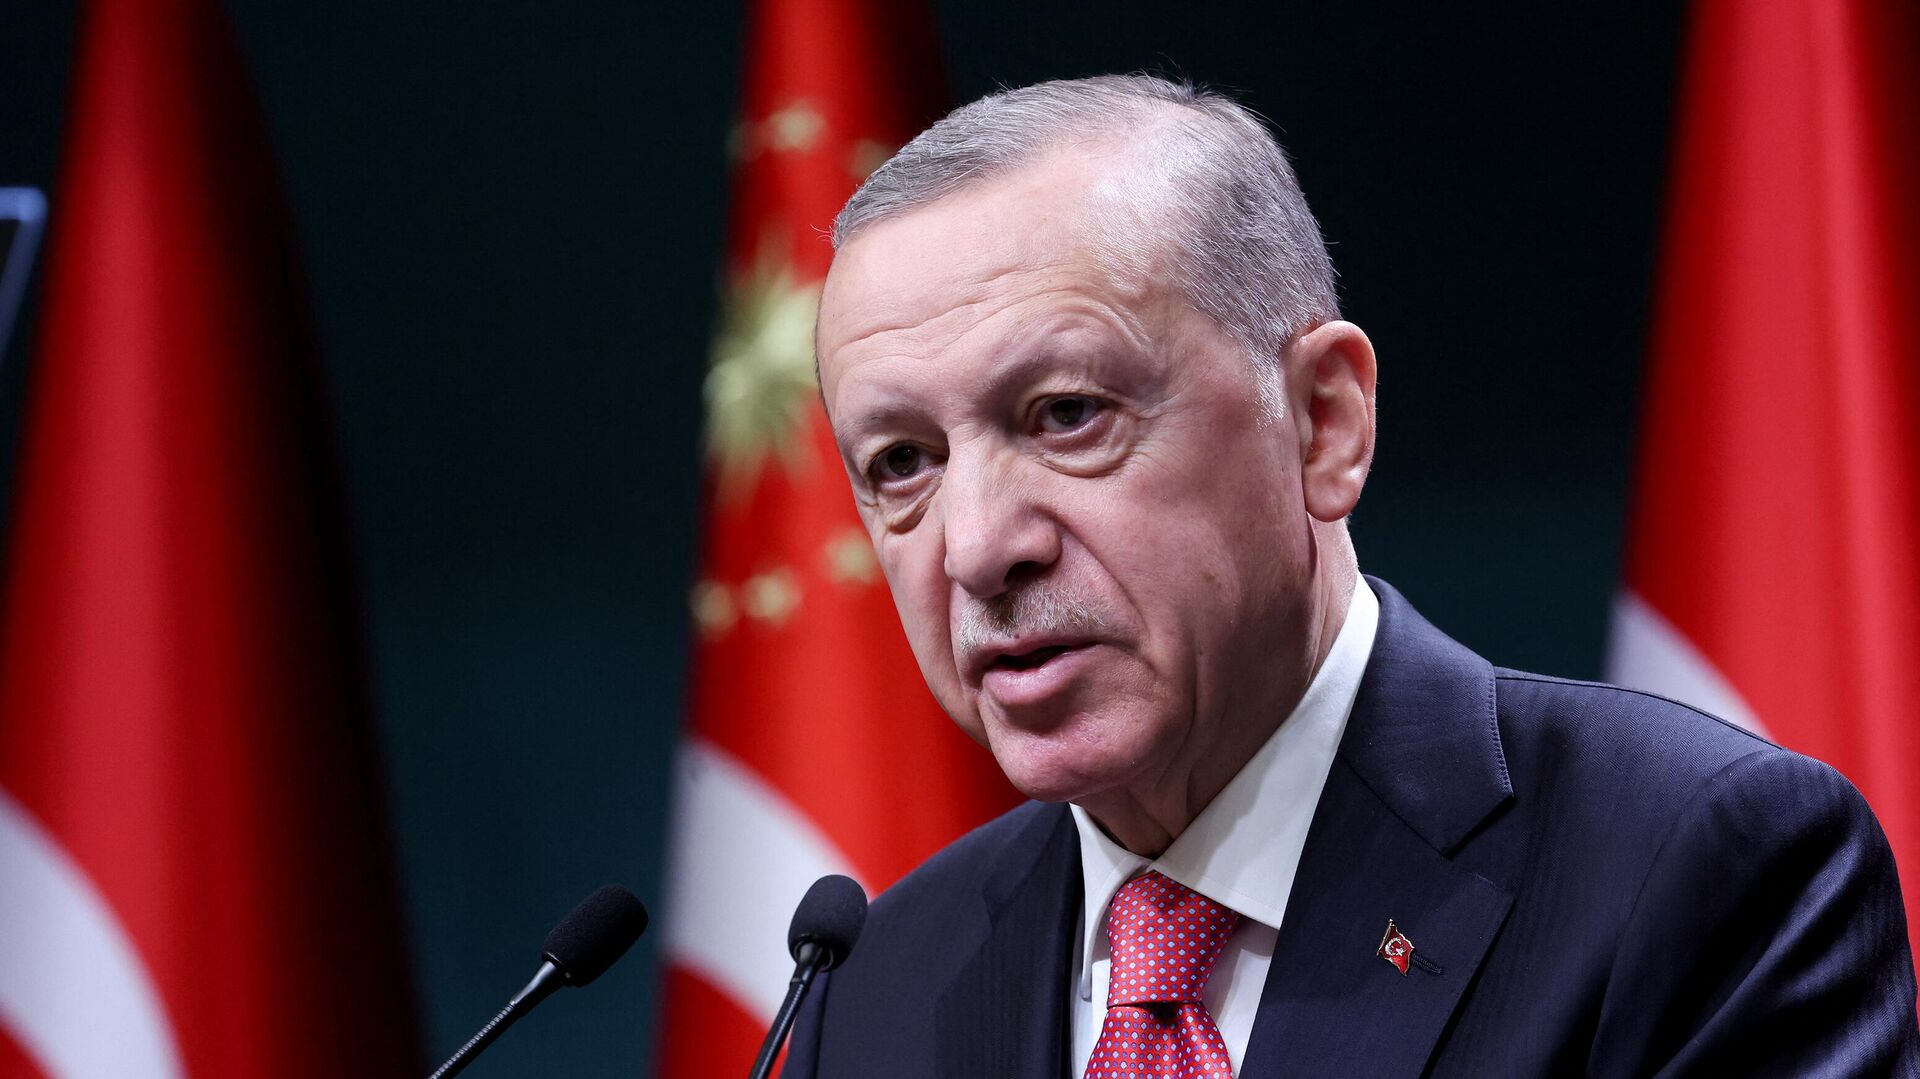 Sự xuất hiện của Tổng thống Erdogan và phương Tây trong hình ảnh sẽ đem lại nhiều cảm xúc khác nhau cho người xem. Đây là một trong những chủ đề đang được quan tâm và bàn luận nhiều nhất trên các trang tin tức và mạng xã hội, và đem lại nhiều thông tin thú vị về các sự kiện quốc tế.